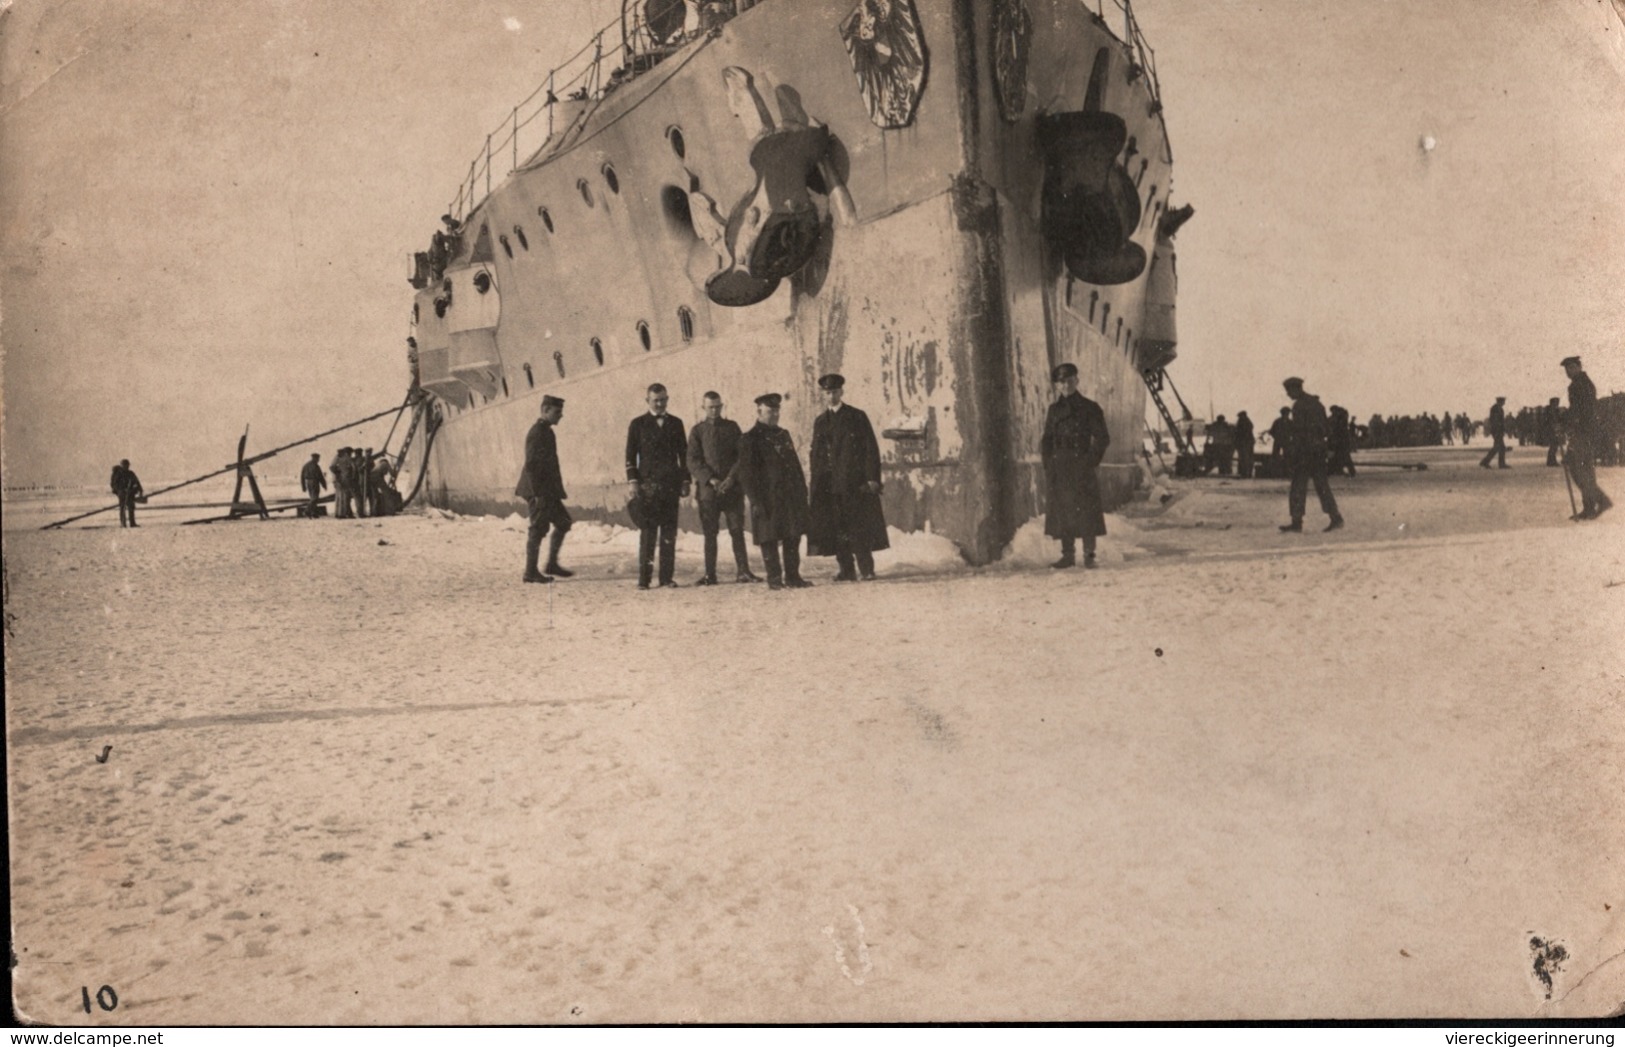 ! 3 Seltene Fotokarten, März 1918, Photos, Aland, Eckerö, Kriegsmarine SMS Westfalen 1. Weltkrieg, Finnland-Intervention - Weltkrieg 1914-18